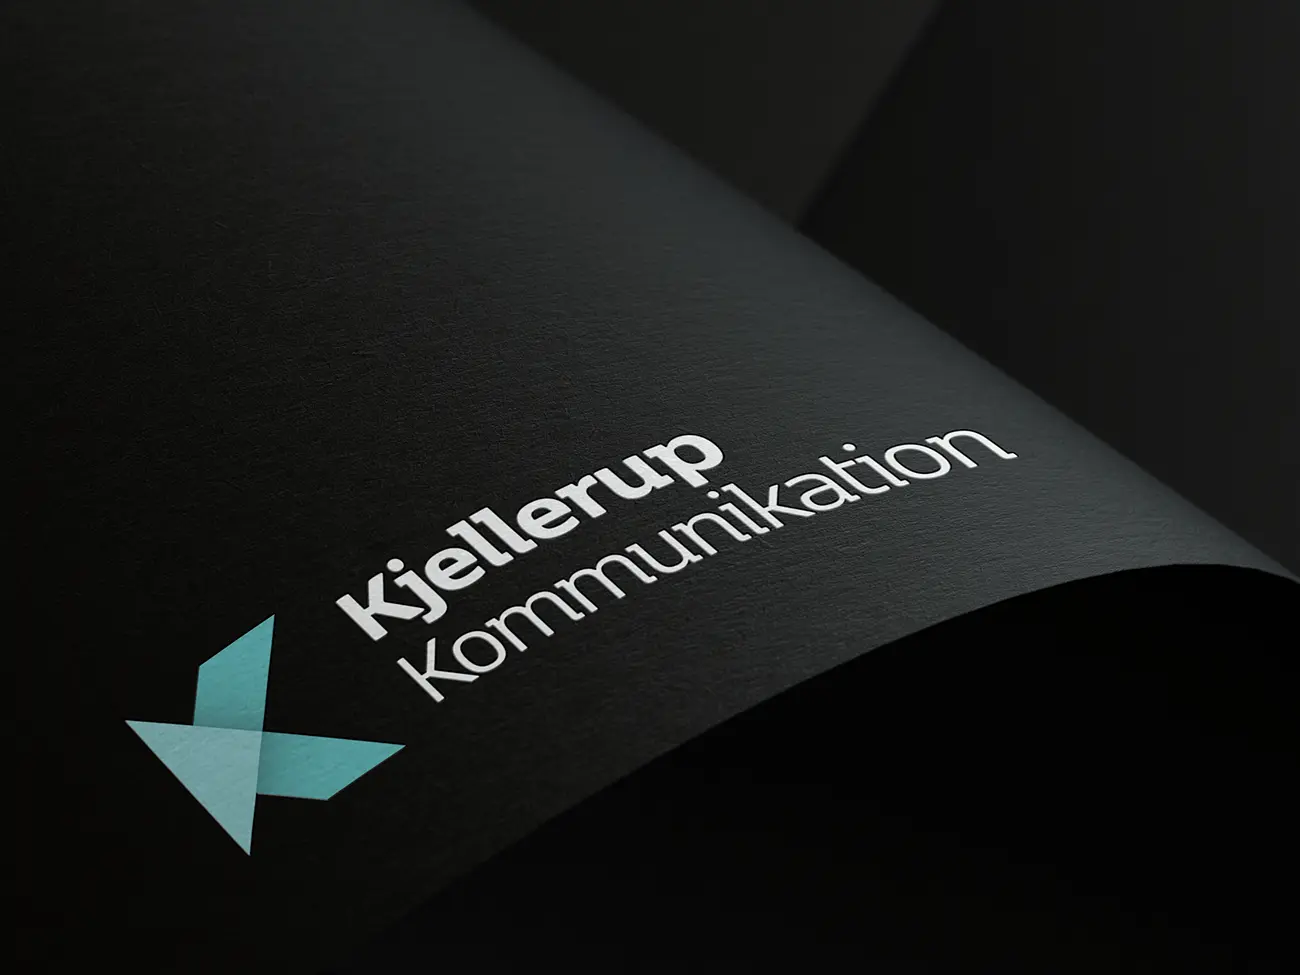 Design af logo til Kjellerup Kommunikation på sort papir